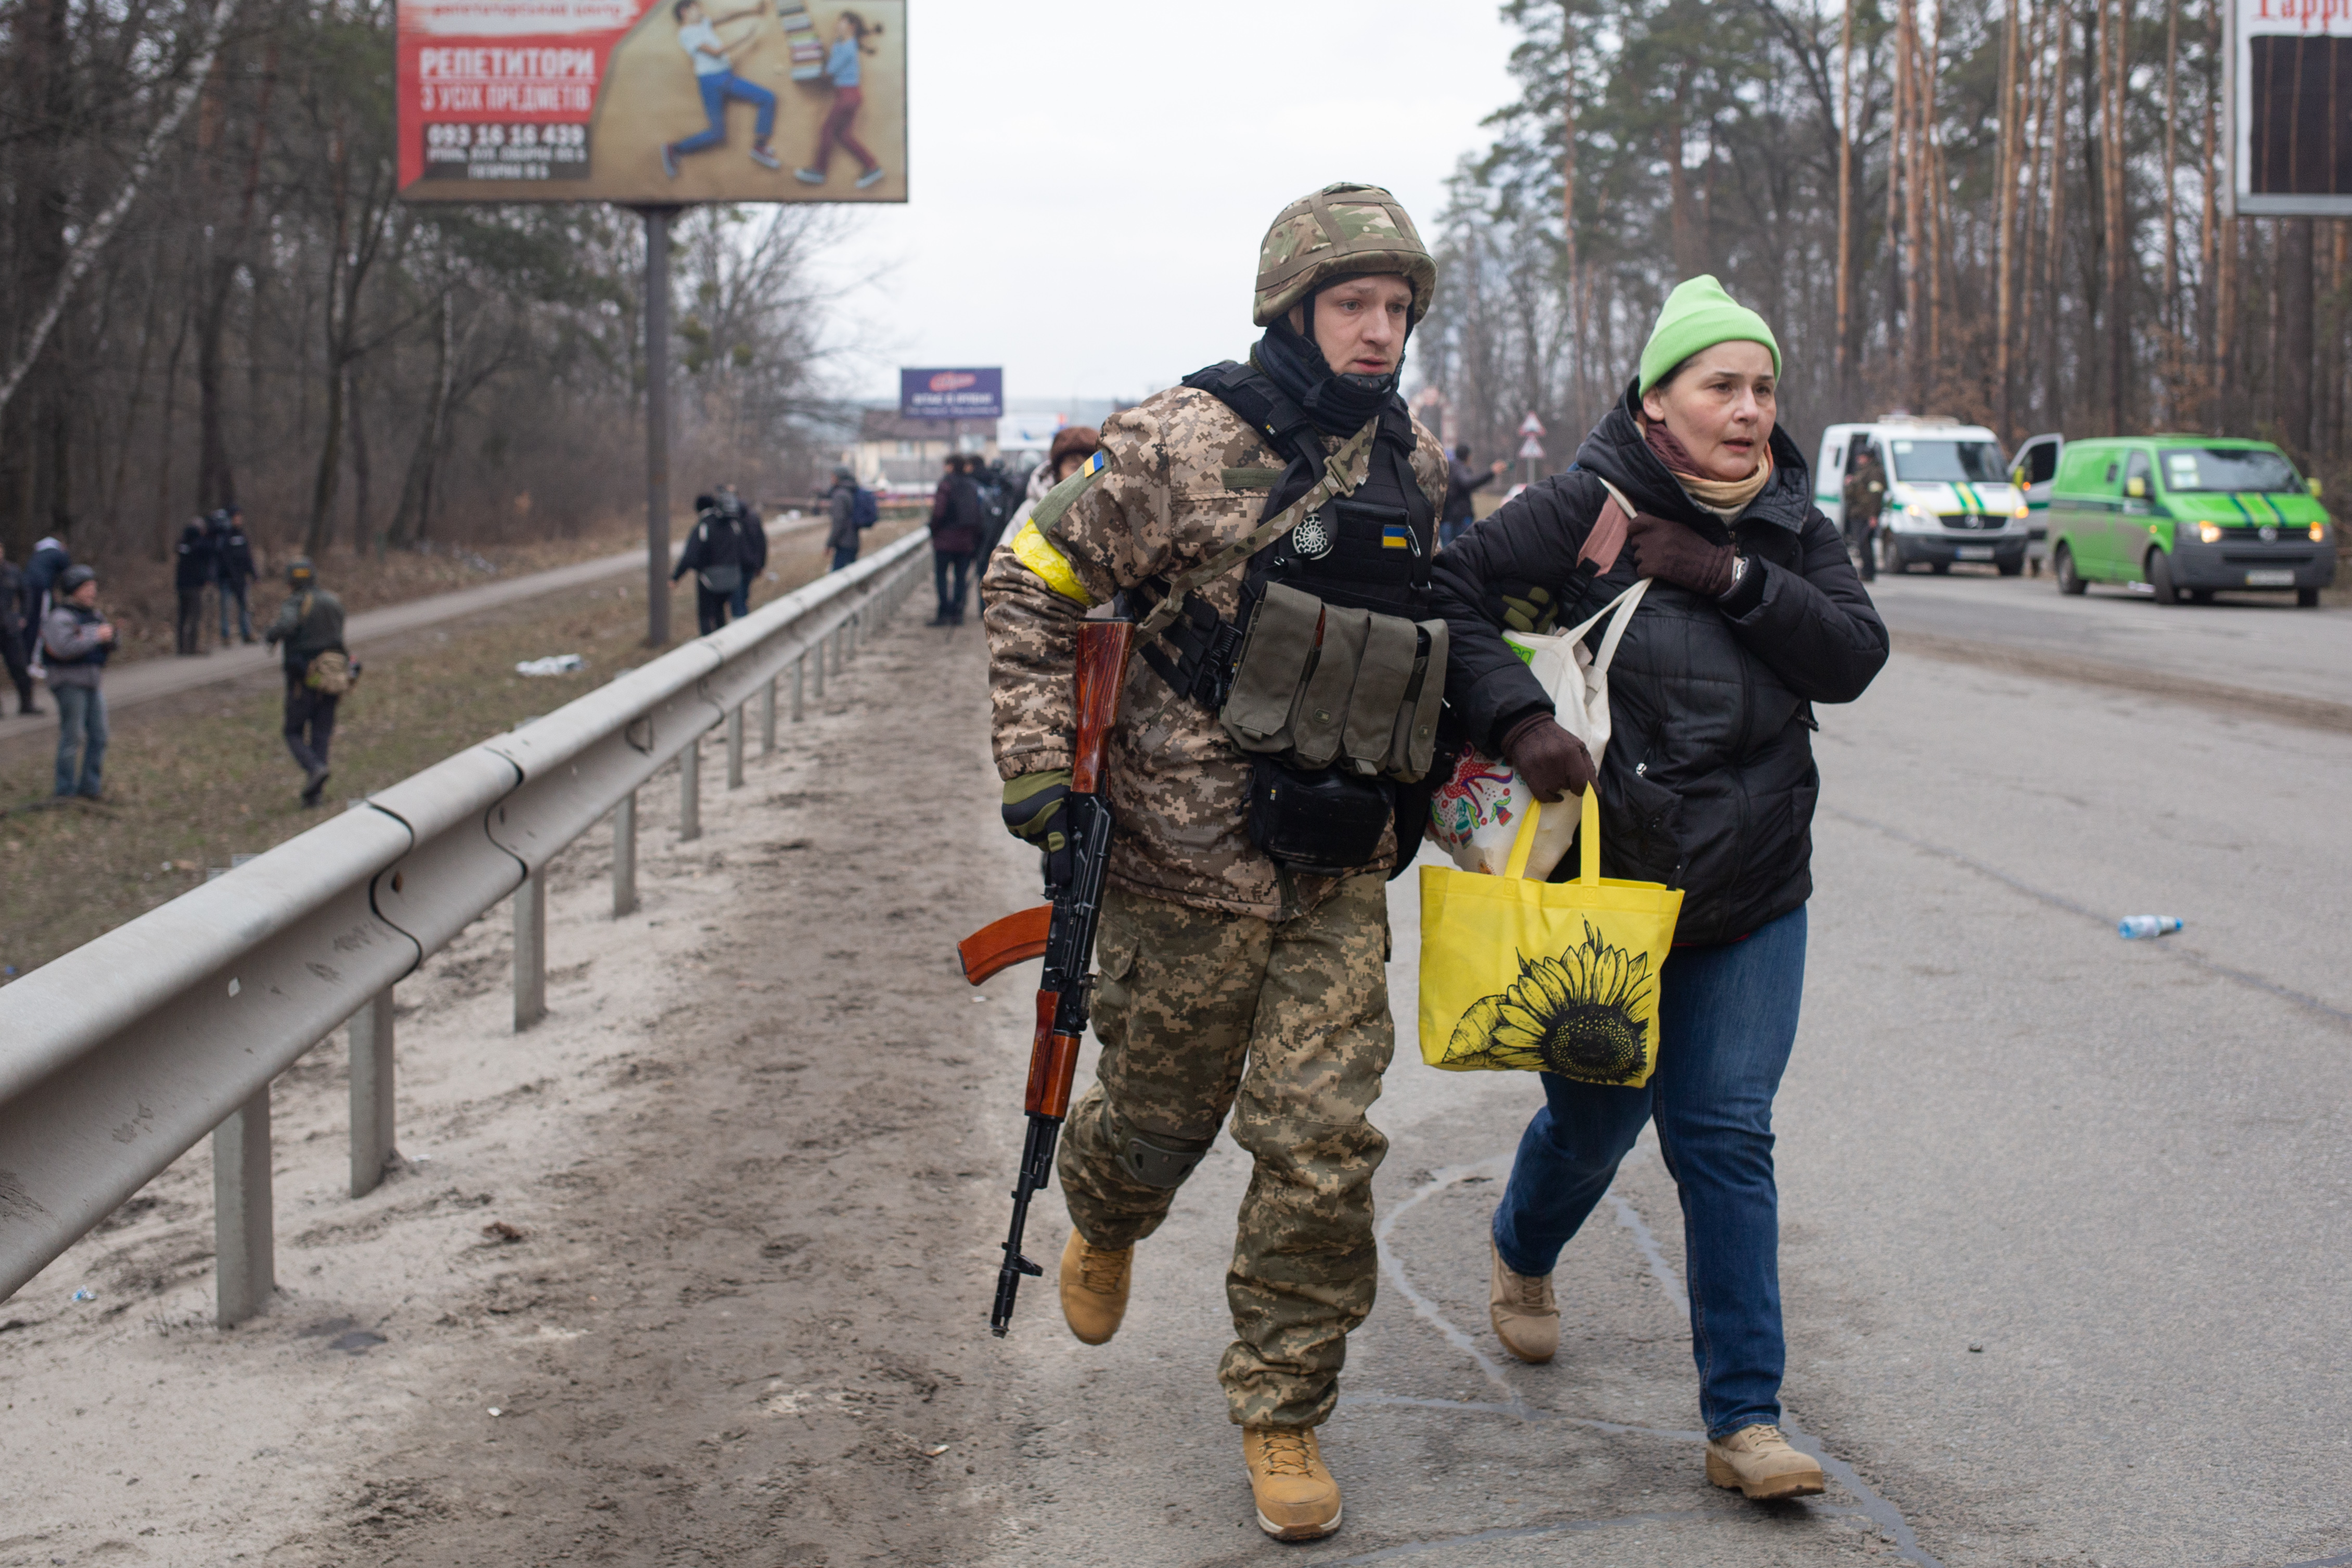 A Ukrainian soldier helps a civilian woman in Kyiv